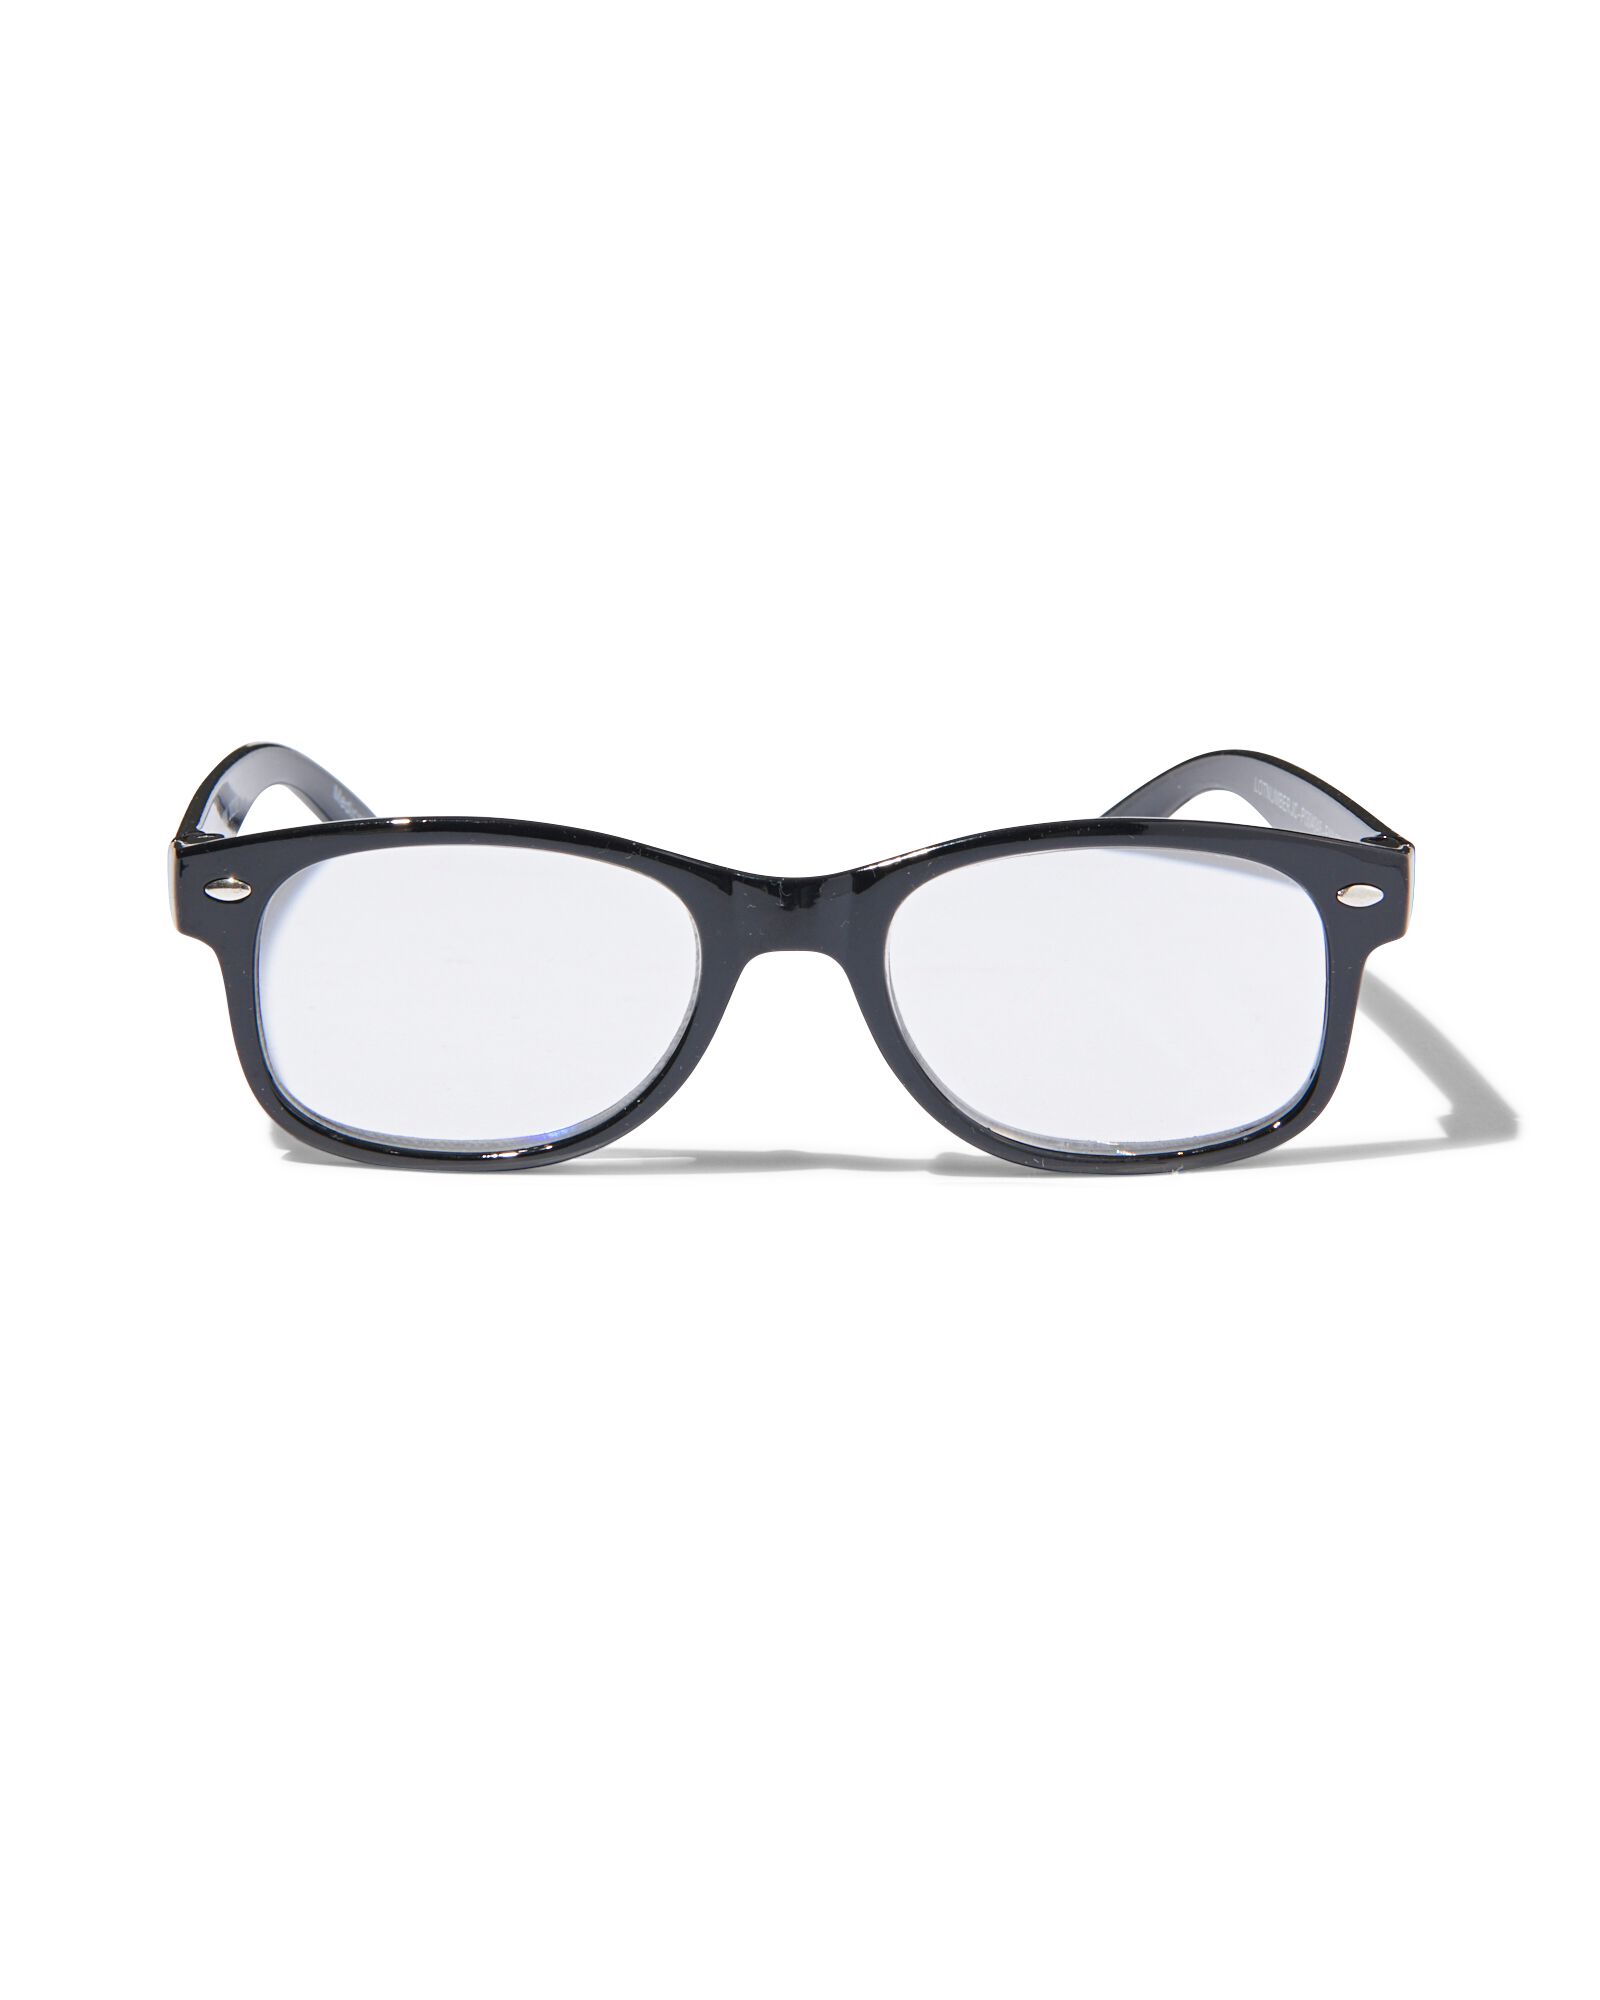 leesbril kunststof +3.0 - HEMA